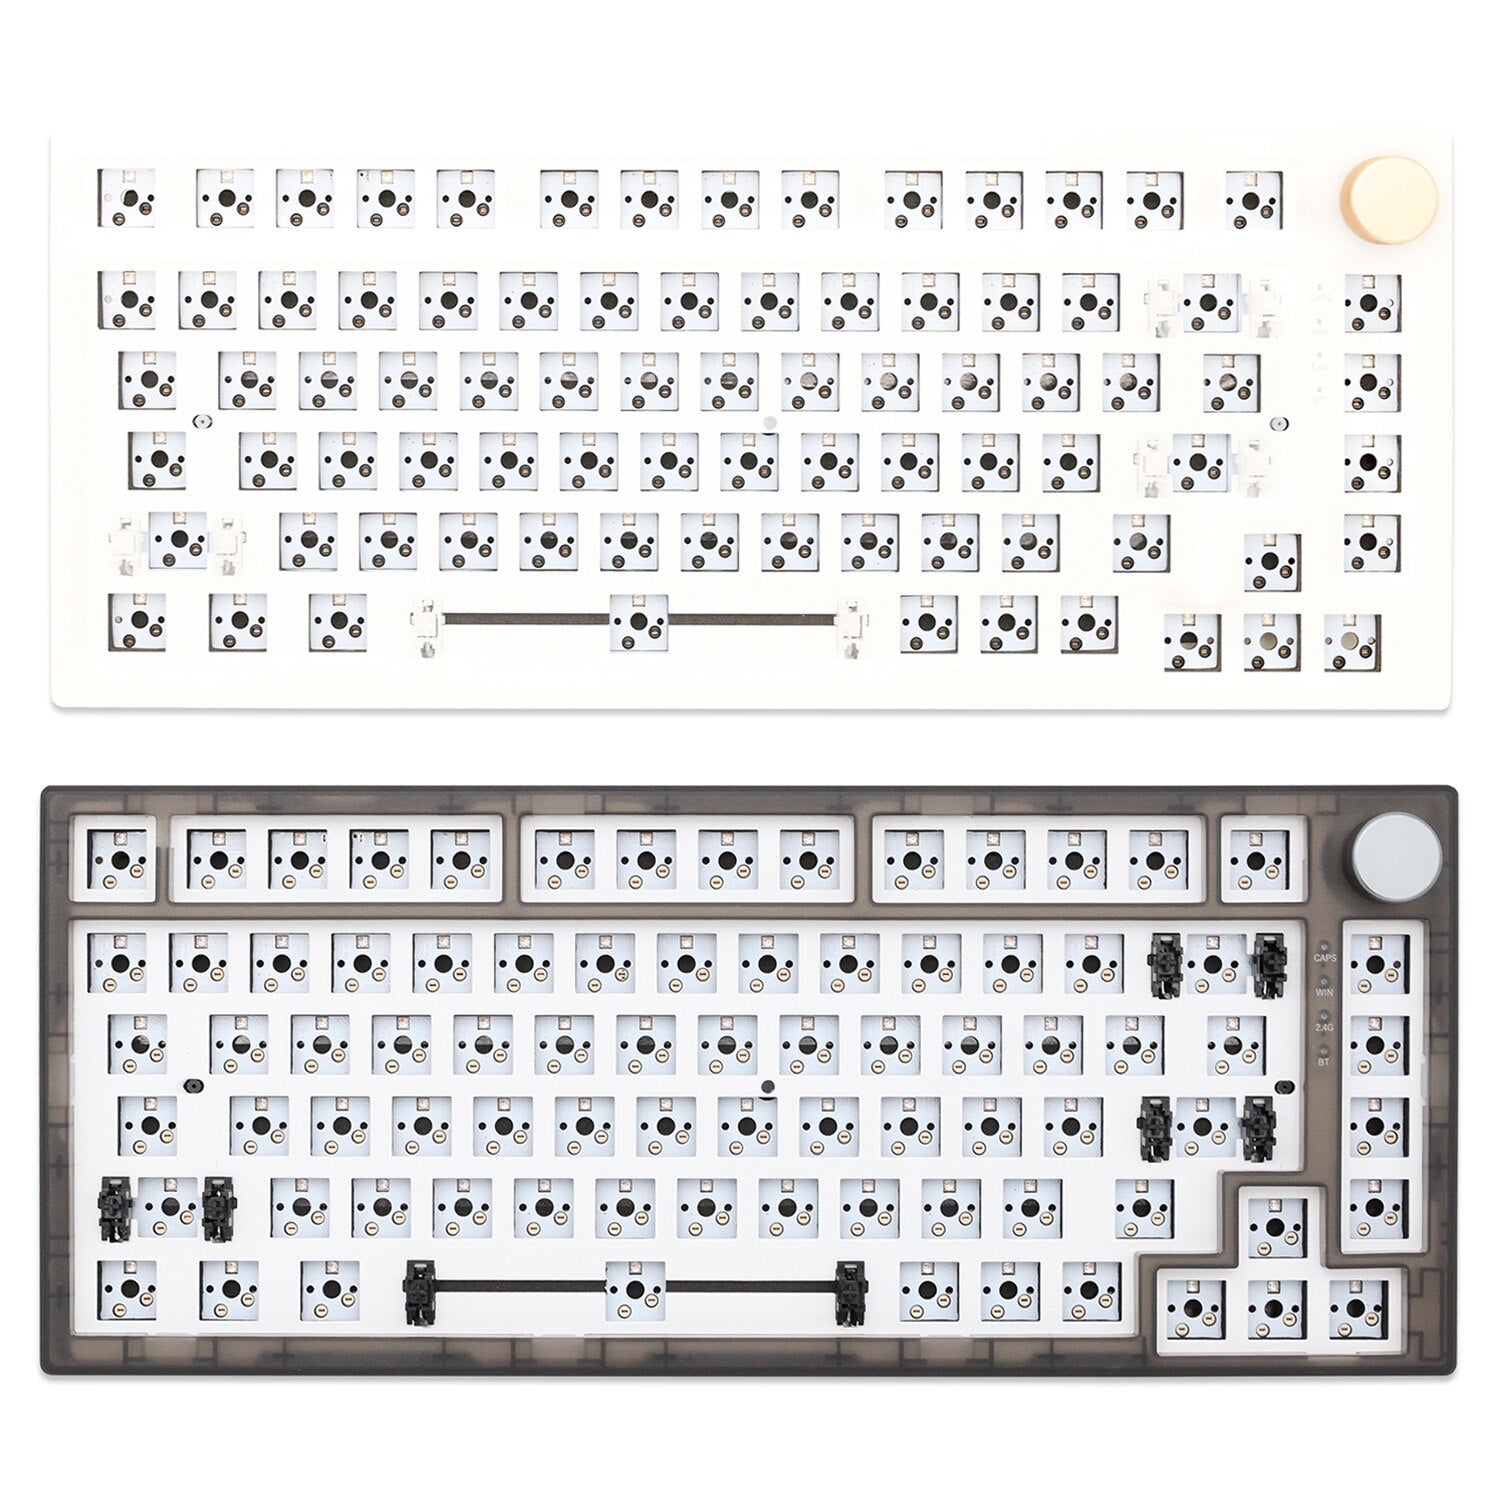 Feker IK75 Pro 3 Mode 75% Gasket Mechanical Keyboard kit